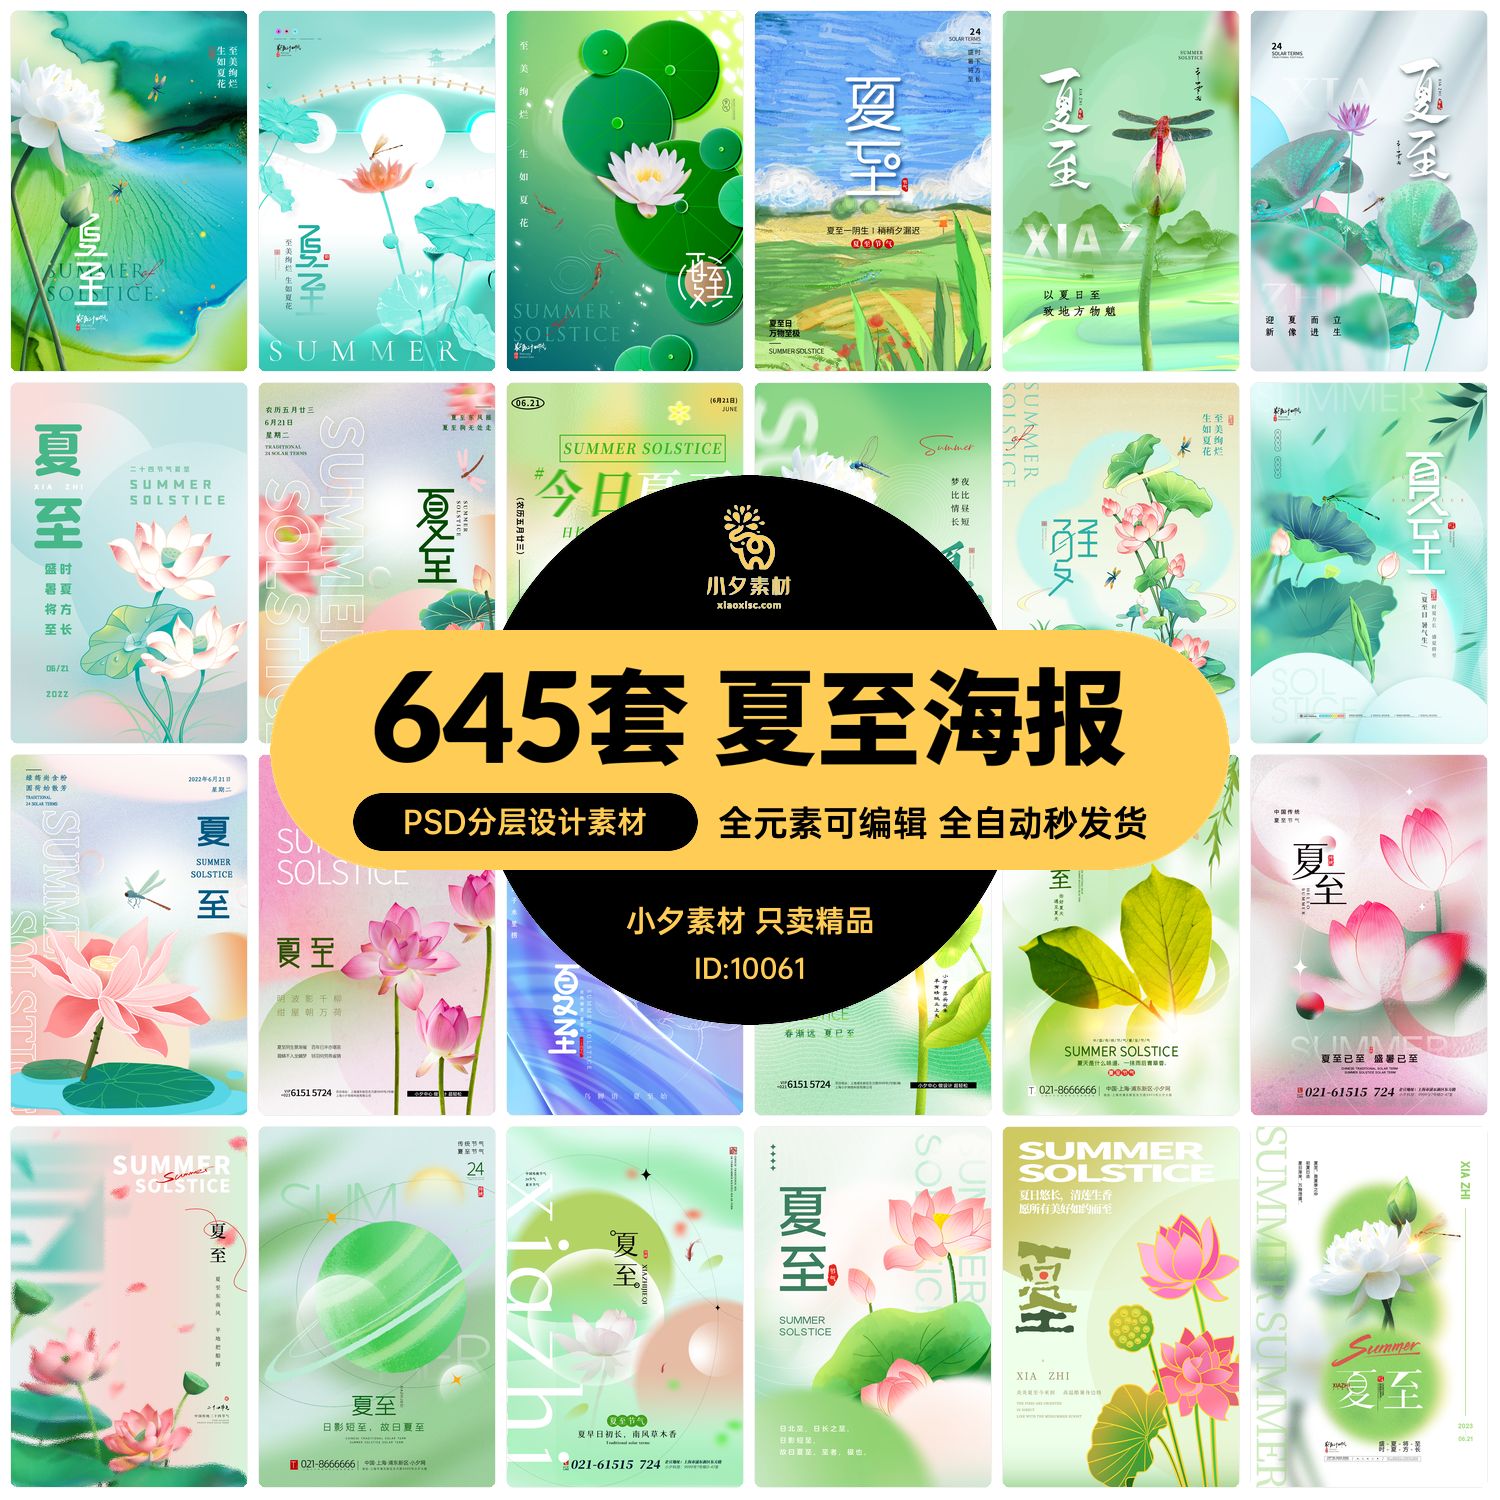 二十四24节气夏季夏至节庆节日宣传海报展板模板PSD分层设计素材